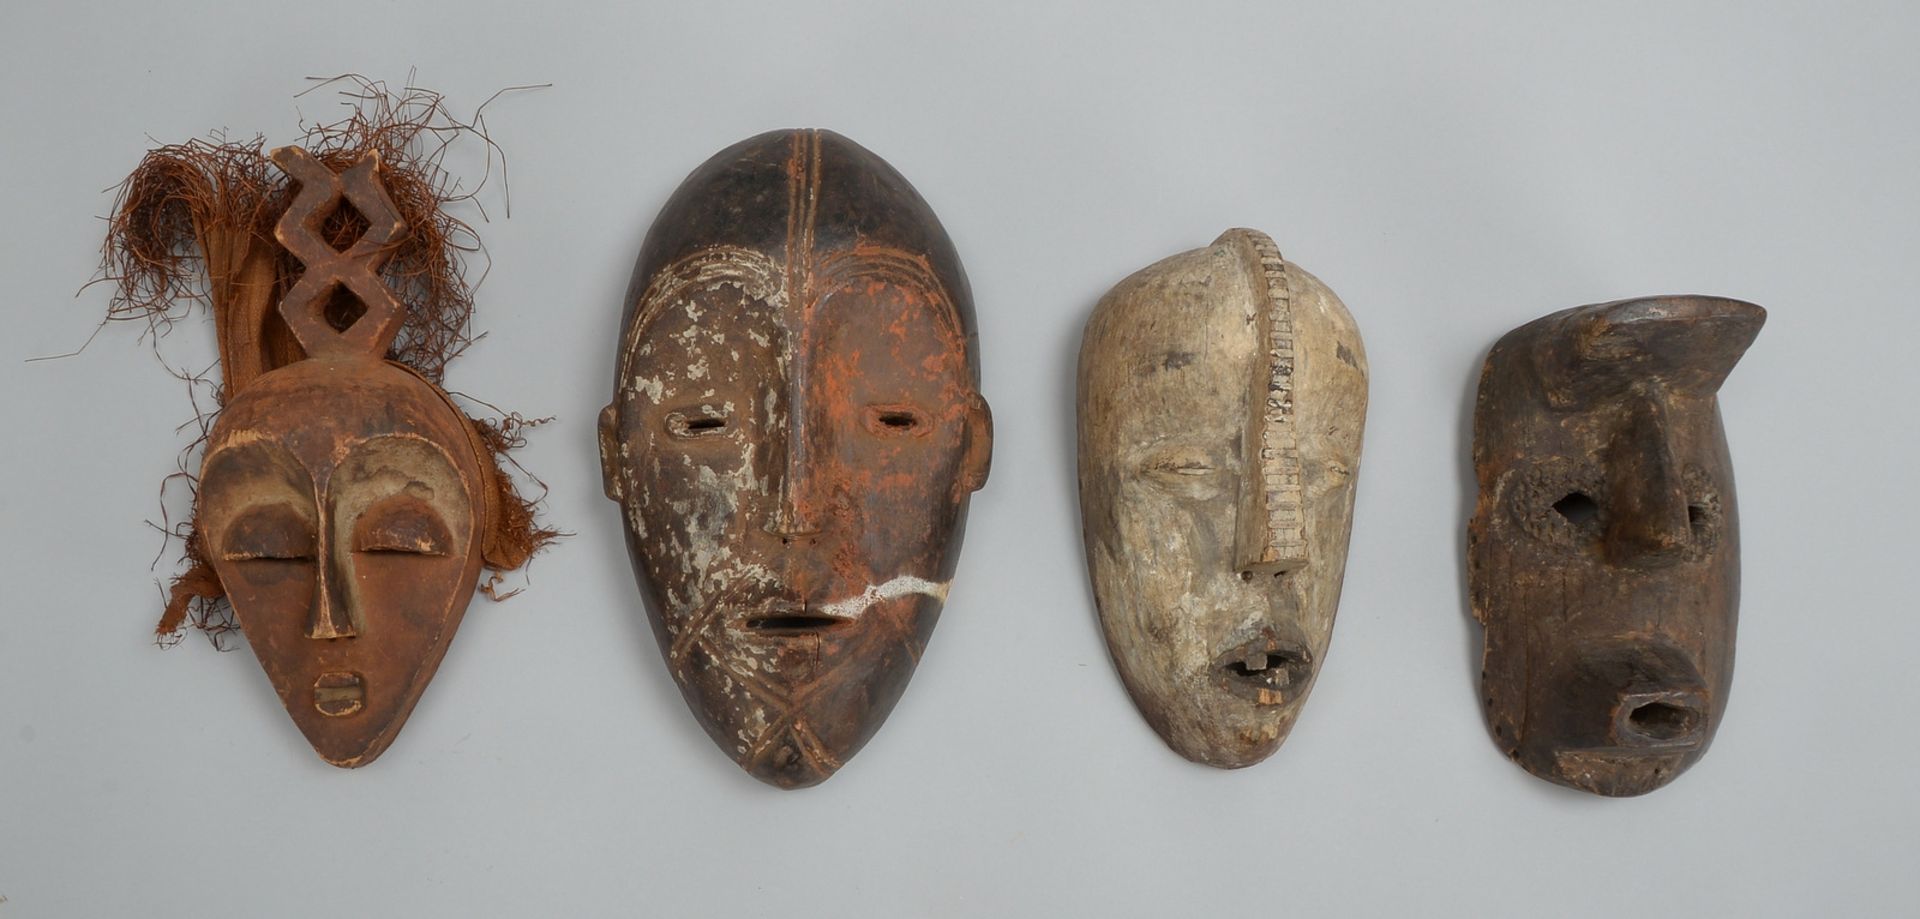 4 afrikanische Tanzmasken/Ritualmasken, Holz; Höhe bis 34 cm, Breite bis 18 cm